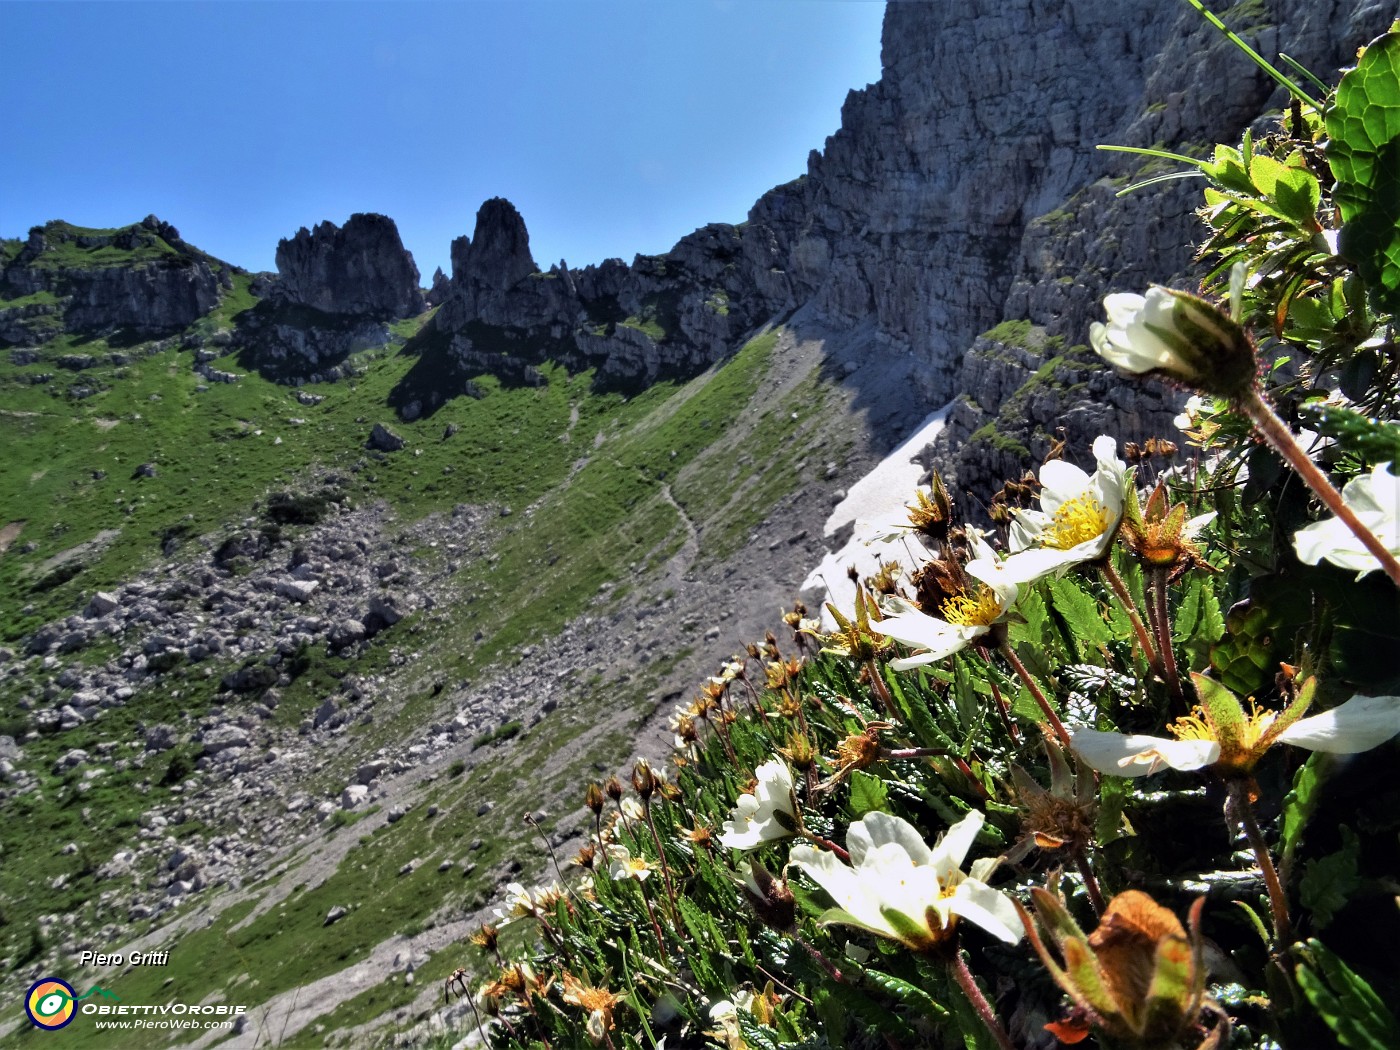 40 Camedrio alpino (Dryas octopetala) in fioritura avanzata con ultima stisciata di neve.JPG -                                